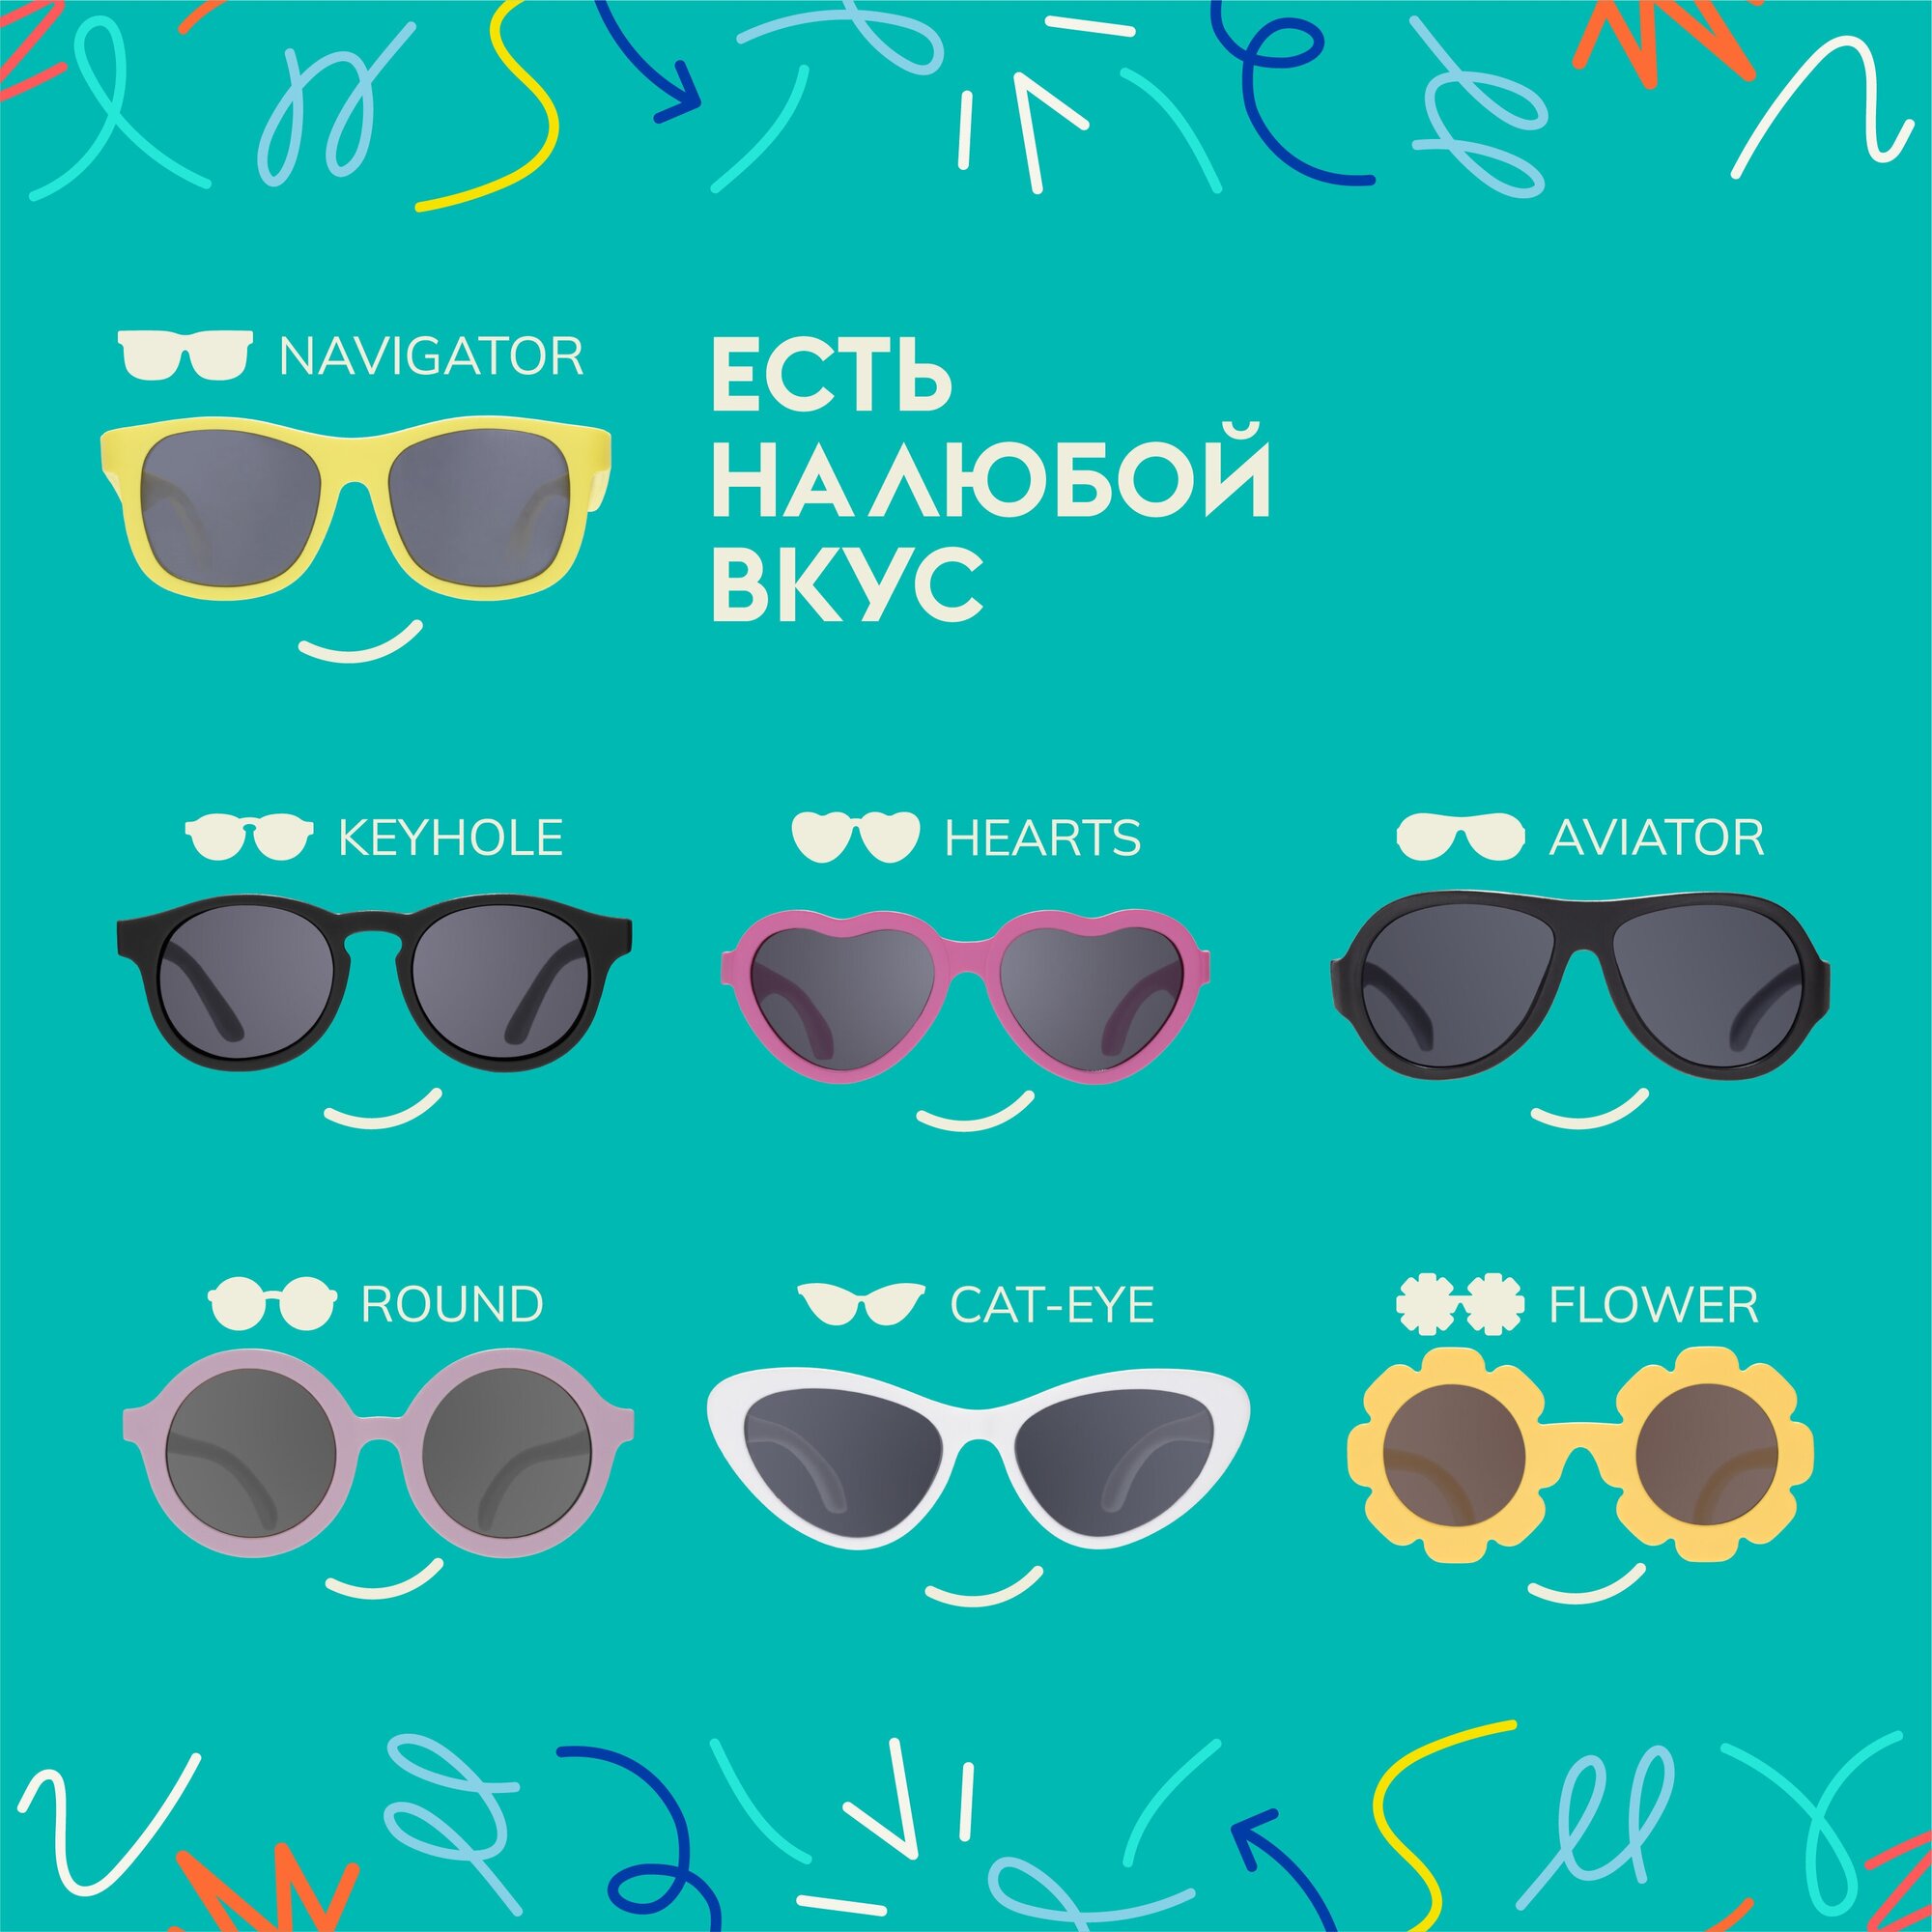 Солнцезащитные очки Babiators